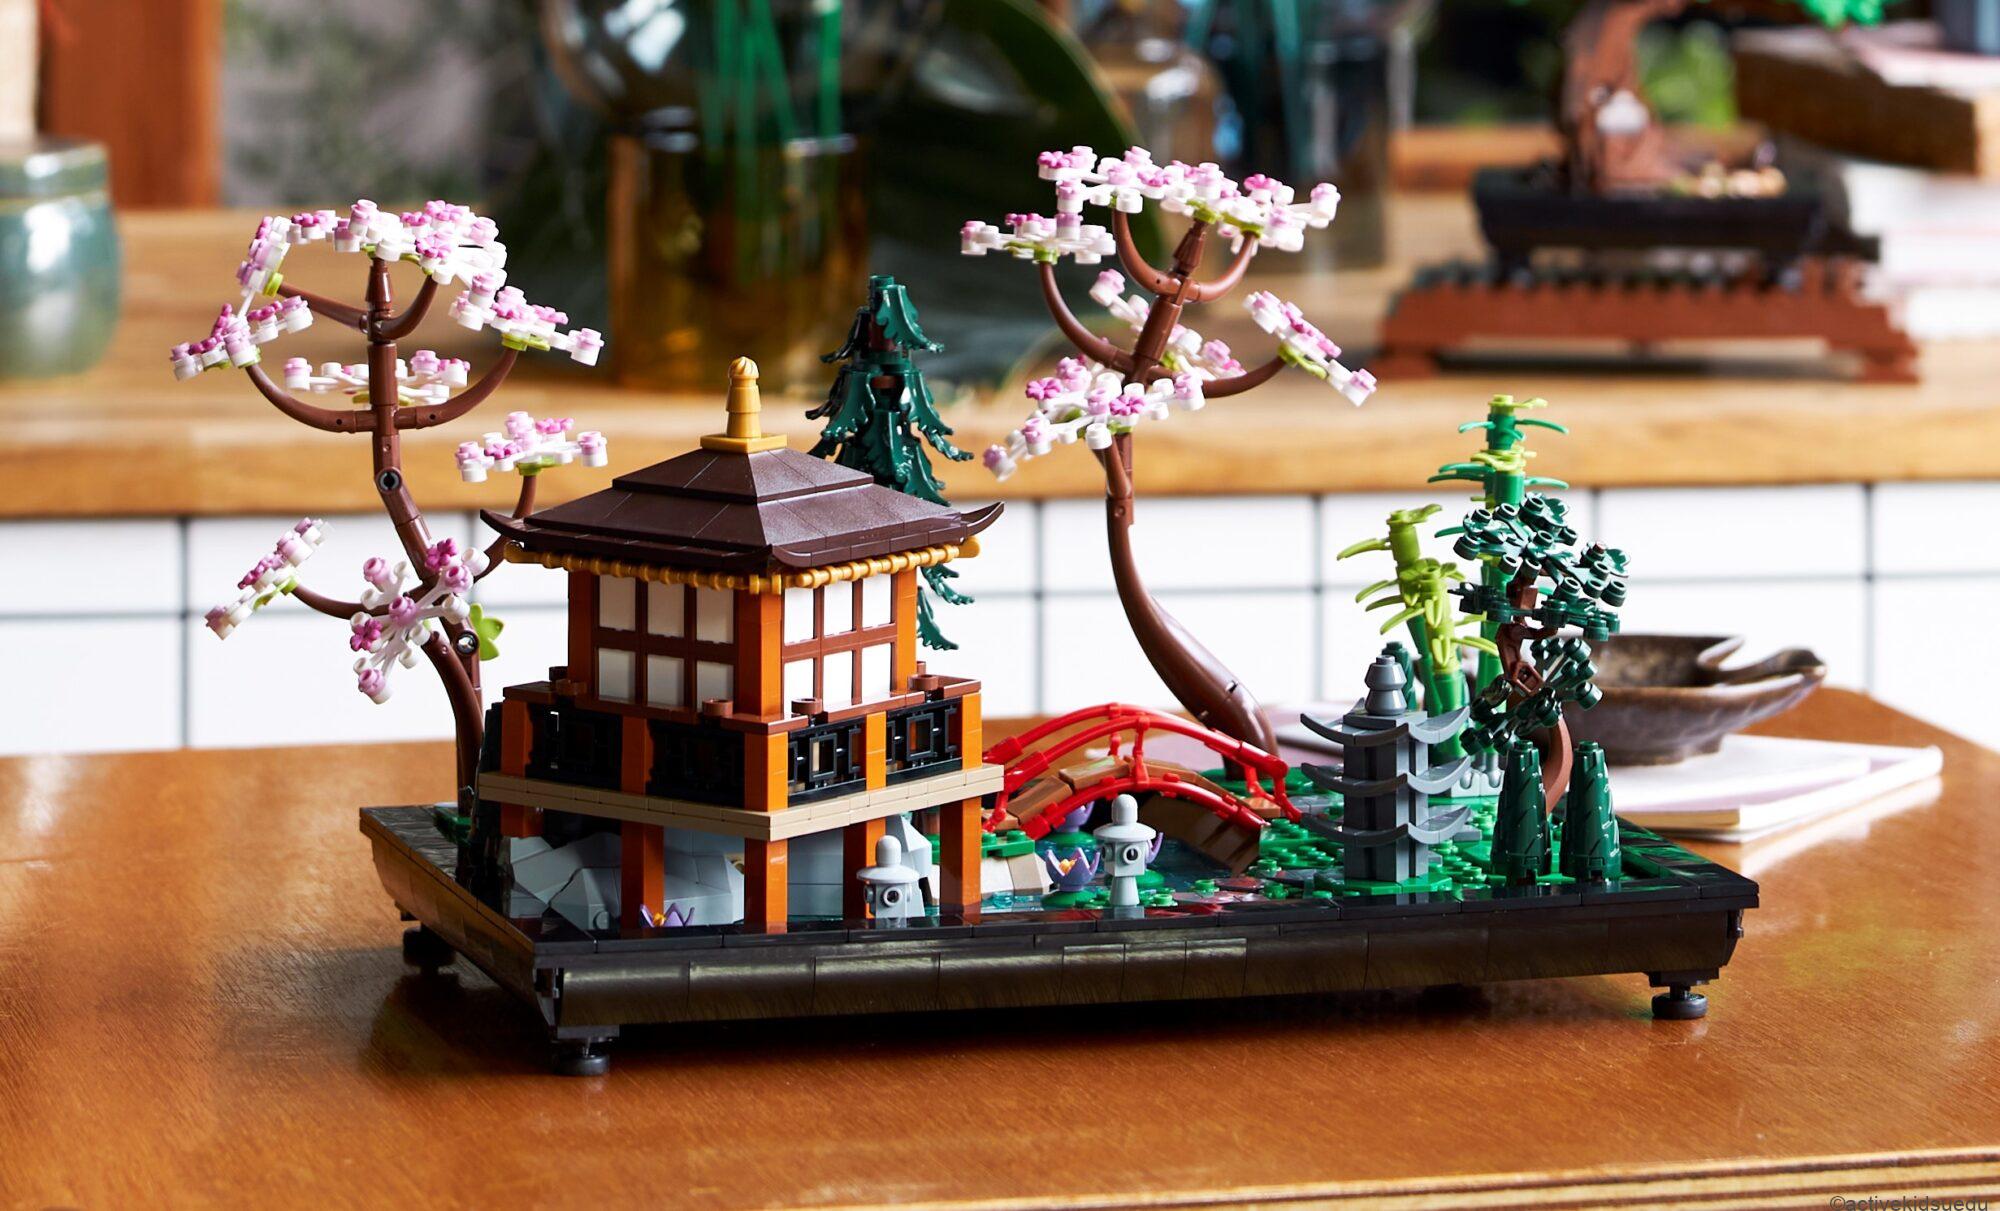 【レゴブロック・子供＆大人18歳~】姫路城と禅ガーデンをレゴで再現！大人向けレゴ®セット「アーキテクチャー 姫路城」と「アイコン 禅ガーデン」誕生日プレゼント＆クリスマスプレゼントに！